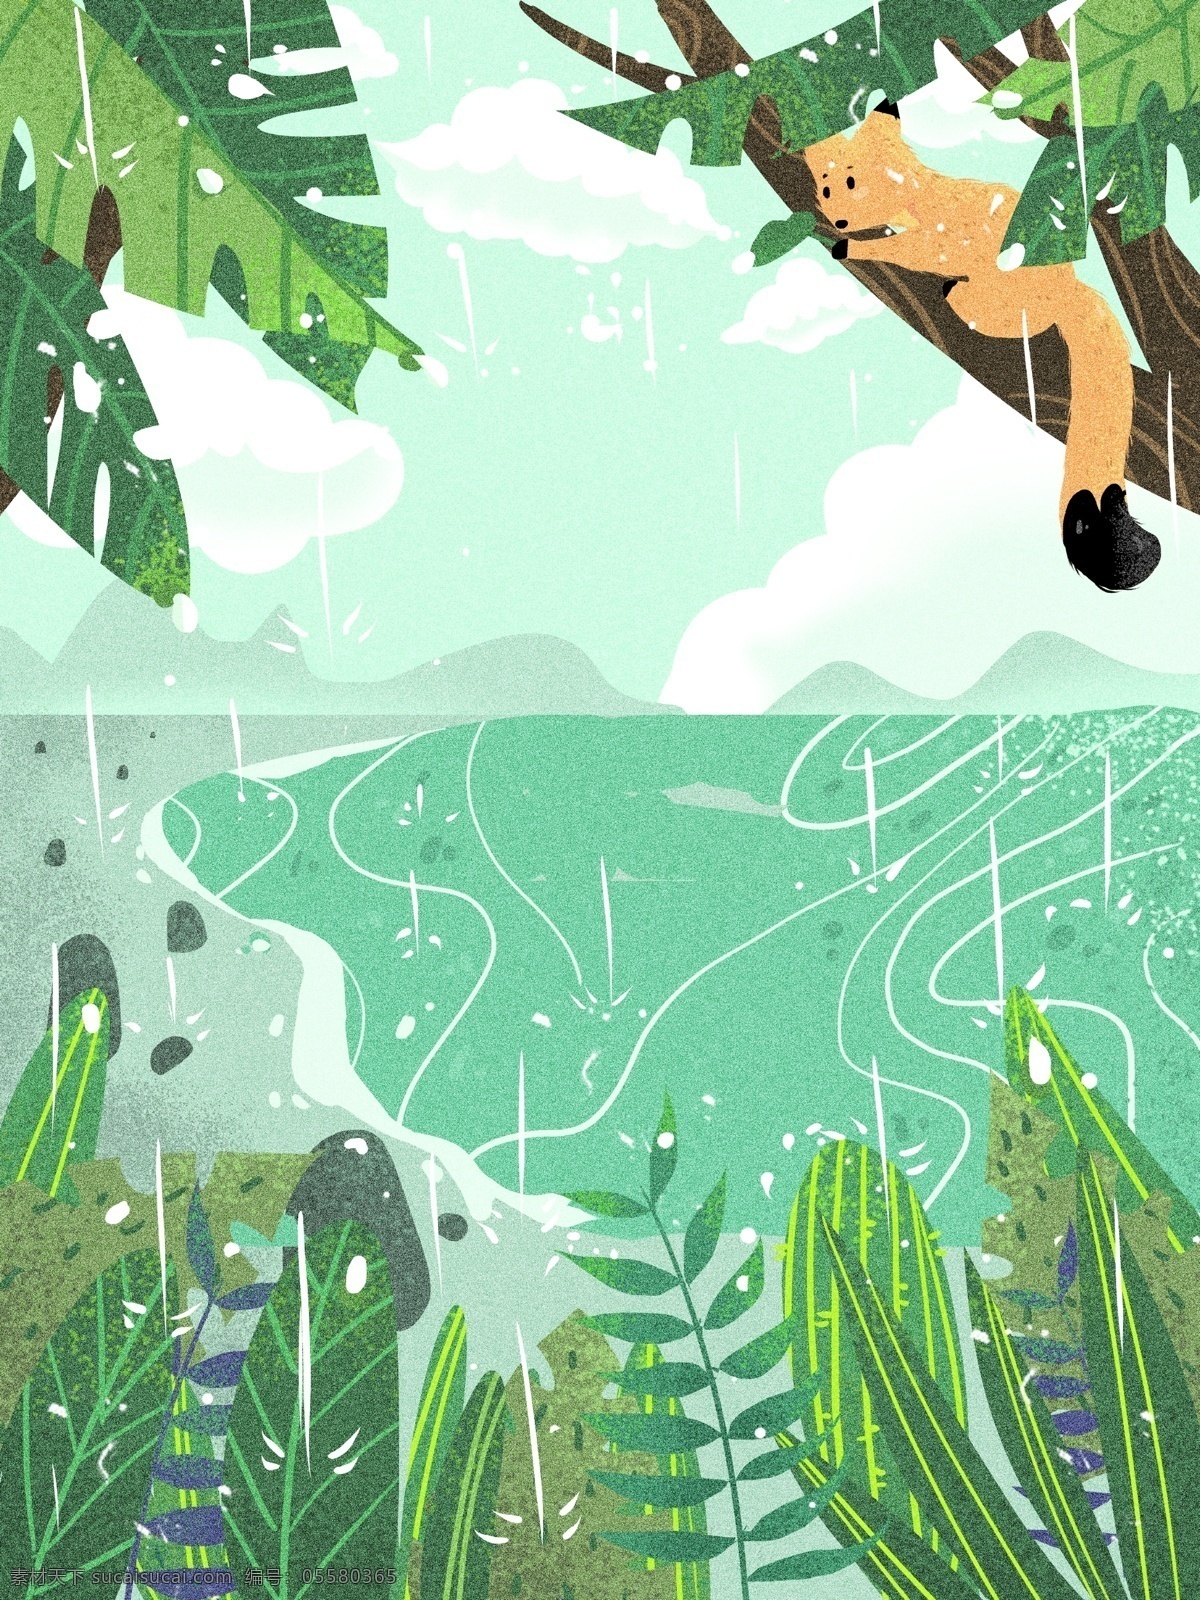 小雨 节气 风景 插画 背景 植物背景 唯美 草地背景 绿地背景 蓝天白云 叶子 河边 山水风景 下雨